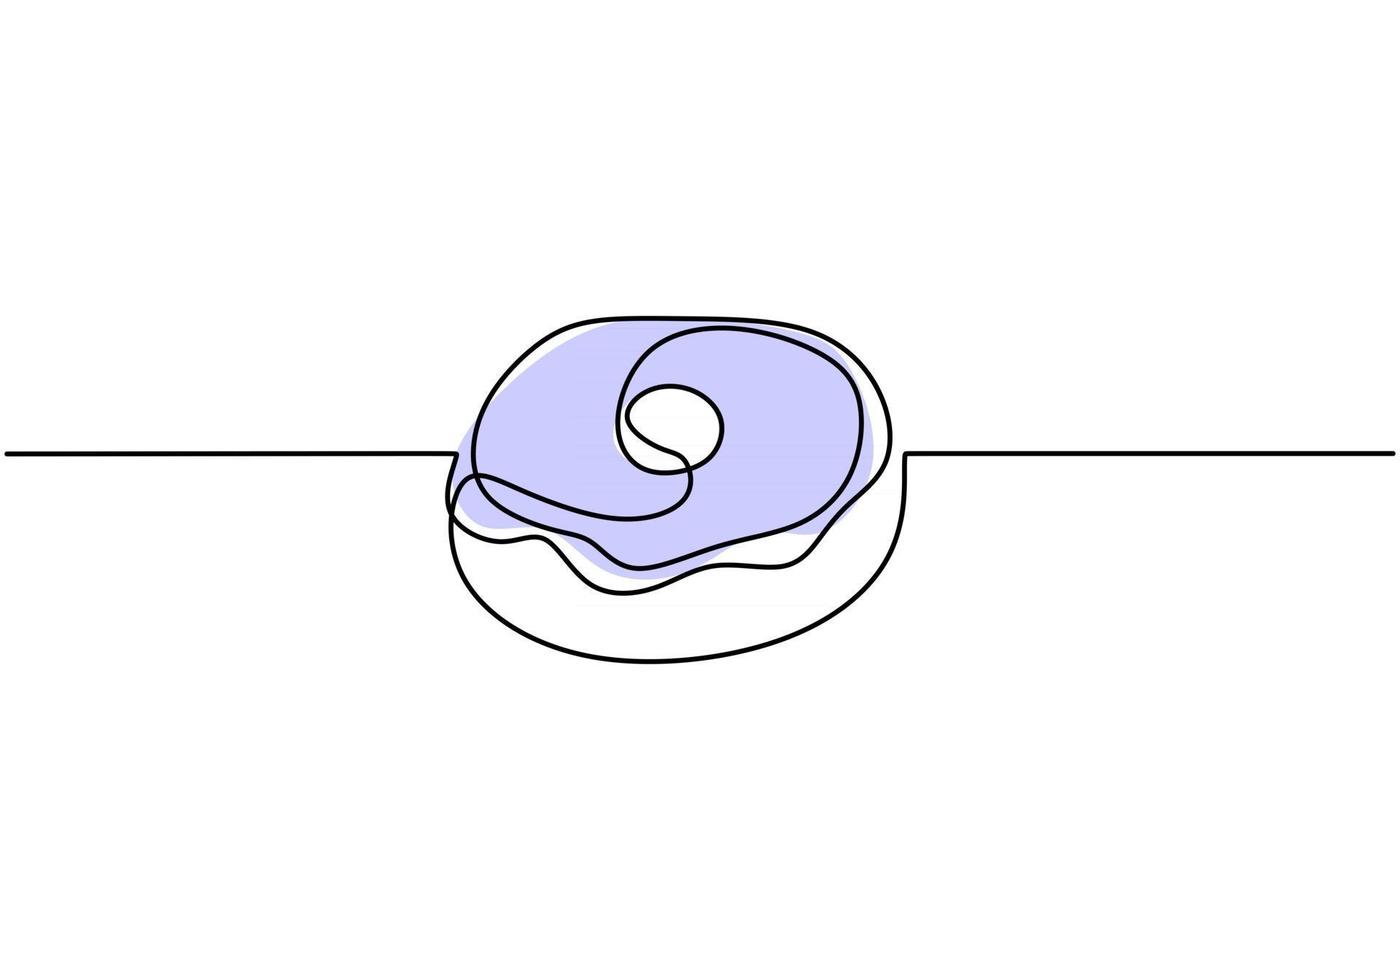 única linha contínua de grandes donuts azuis. grandes donuts azuis em um estilo de linha isolado no fundo branco. vetor